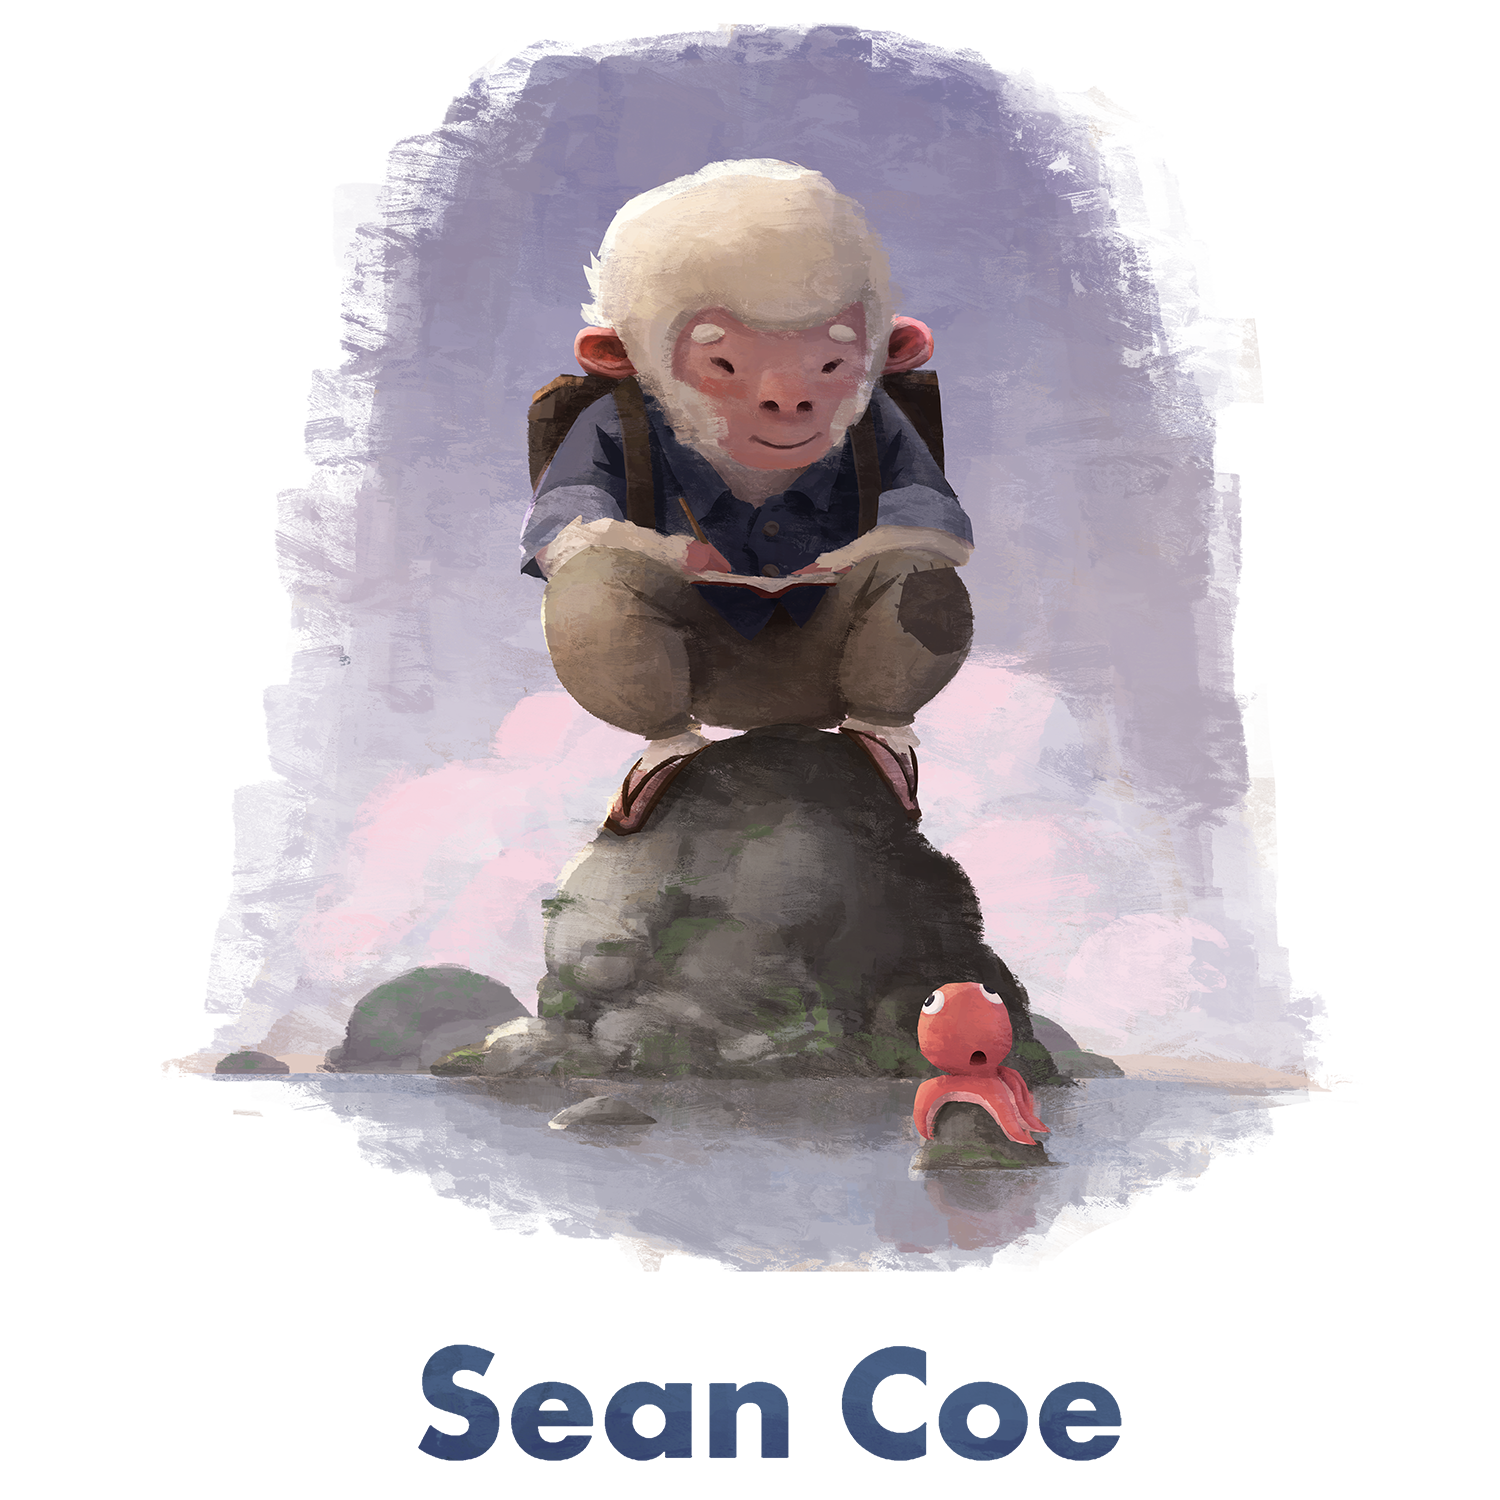 Sean Coe